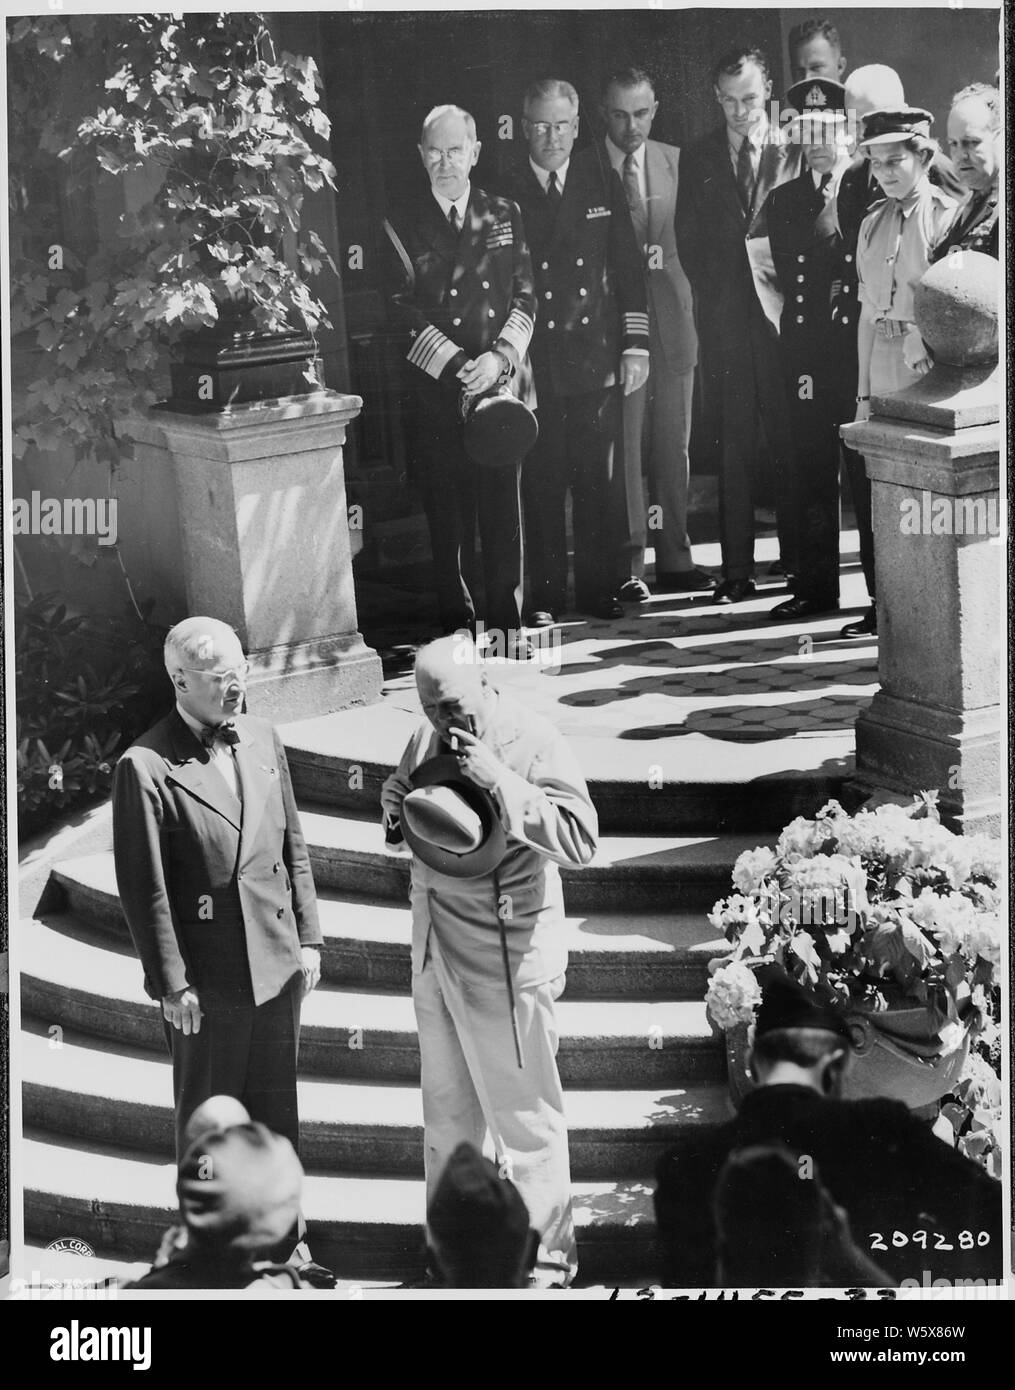 Präsident Truman und der britische Premierminister Winston Churchill am unteren Ende der Treppe der Kleinen Weißen Haus, die Residenz des Präsidenten Truman während der Potsdamer Konferenz in Deutschland. Am oberen Ende der Treppe sind Adm. William Leahy (ganz links) und Mary Churchill, Tochter von Winston Curchill (ganz rechts). Stockfoto